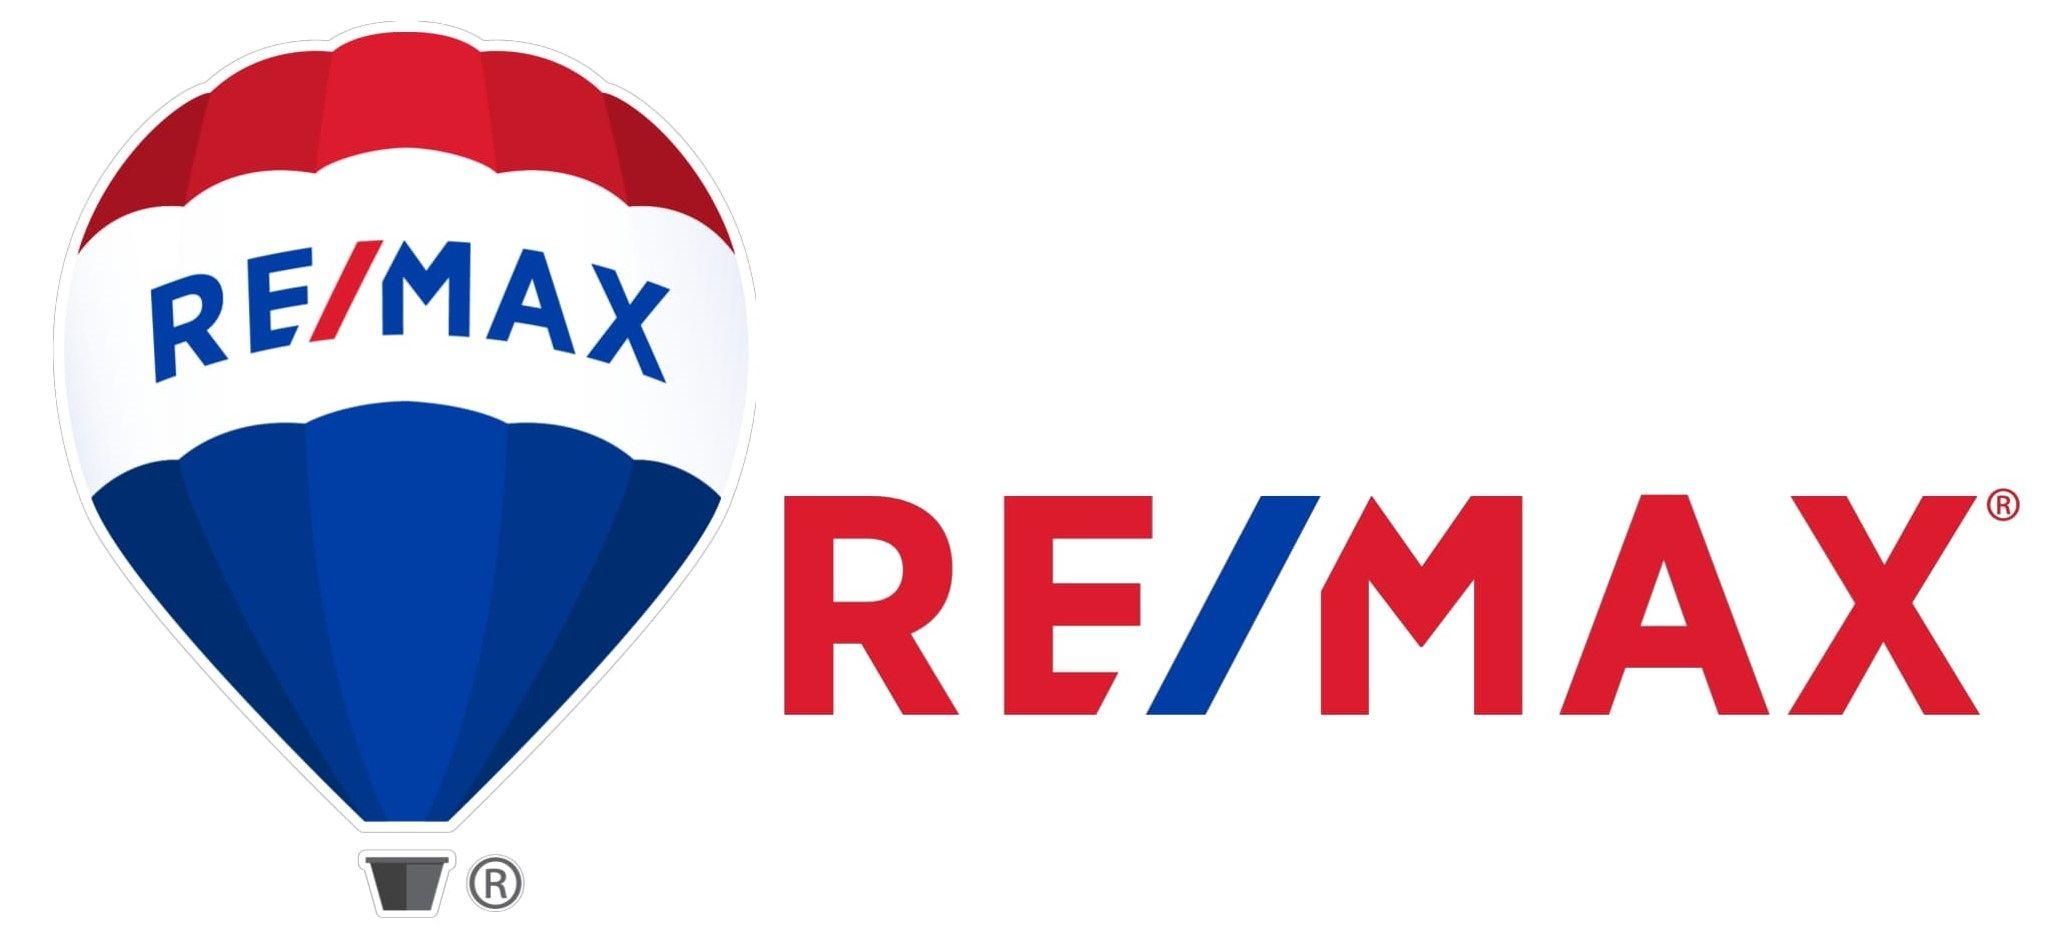 Remax.com Logo - Why RE/MAX? – RE/MAX Alliance Victoria